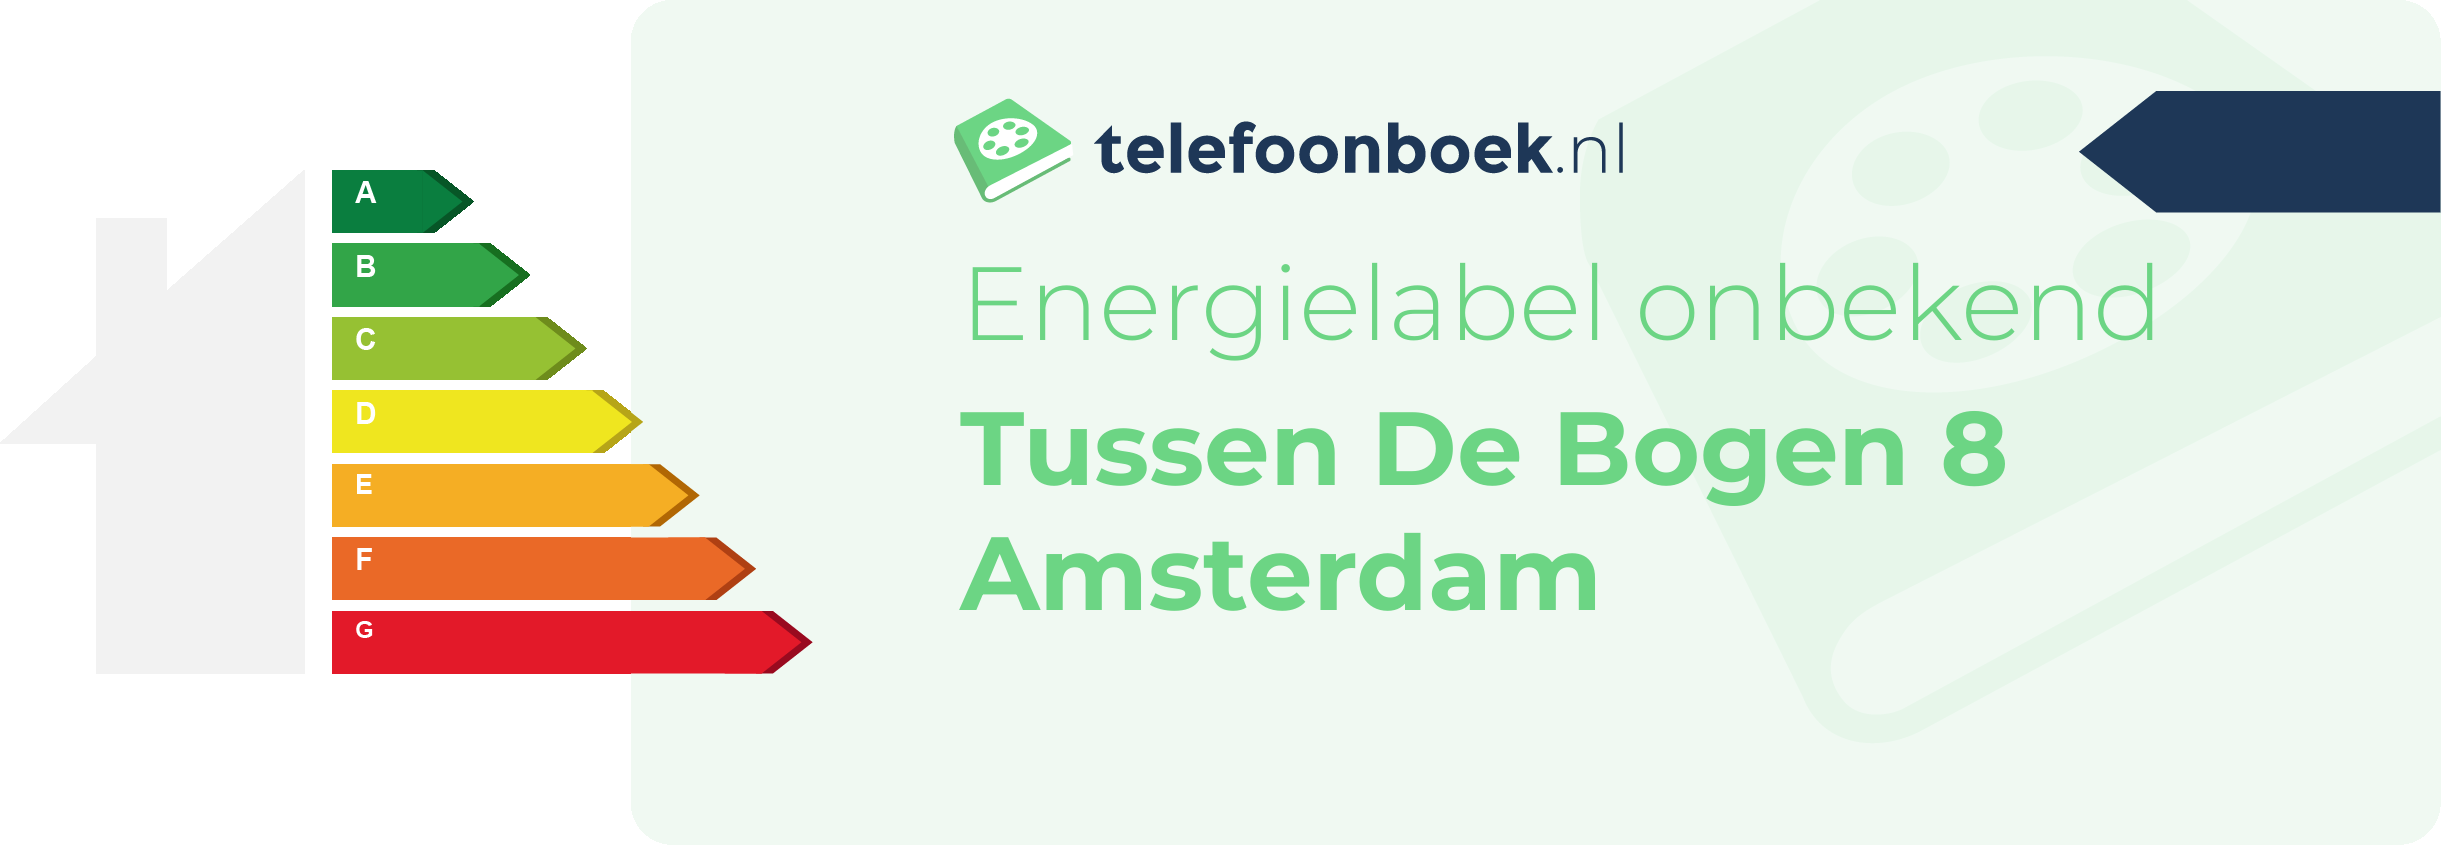 Energielabel Tussen De Bogen 8 Amsterdam